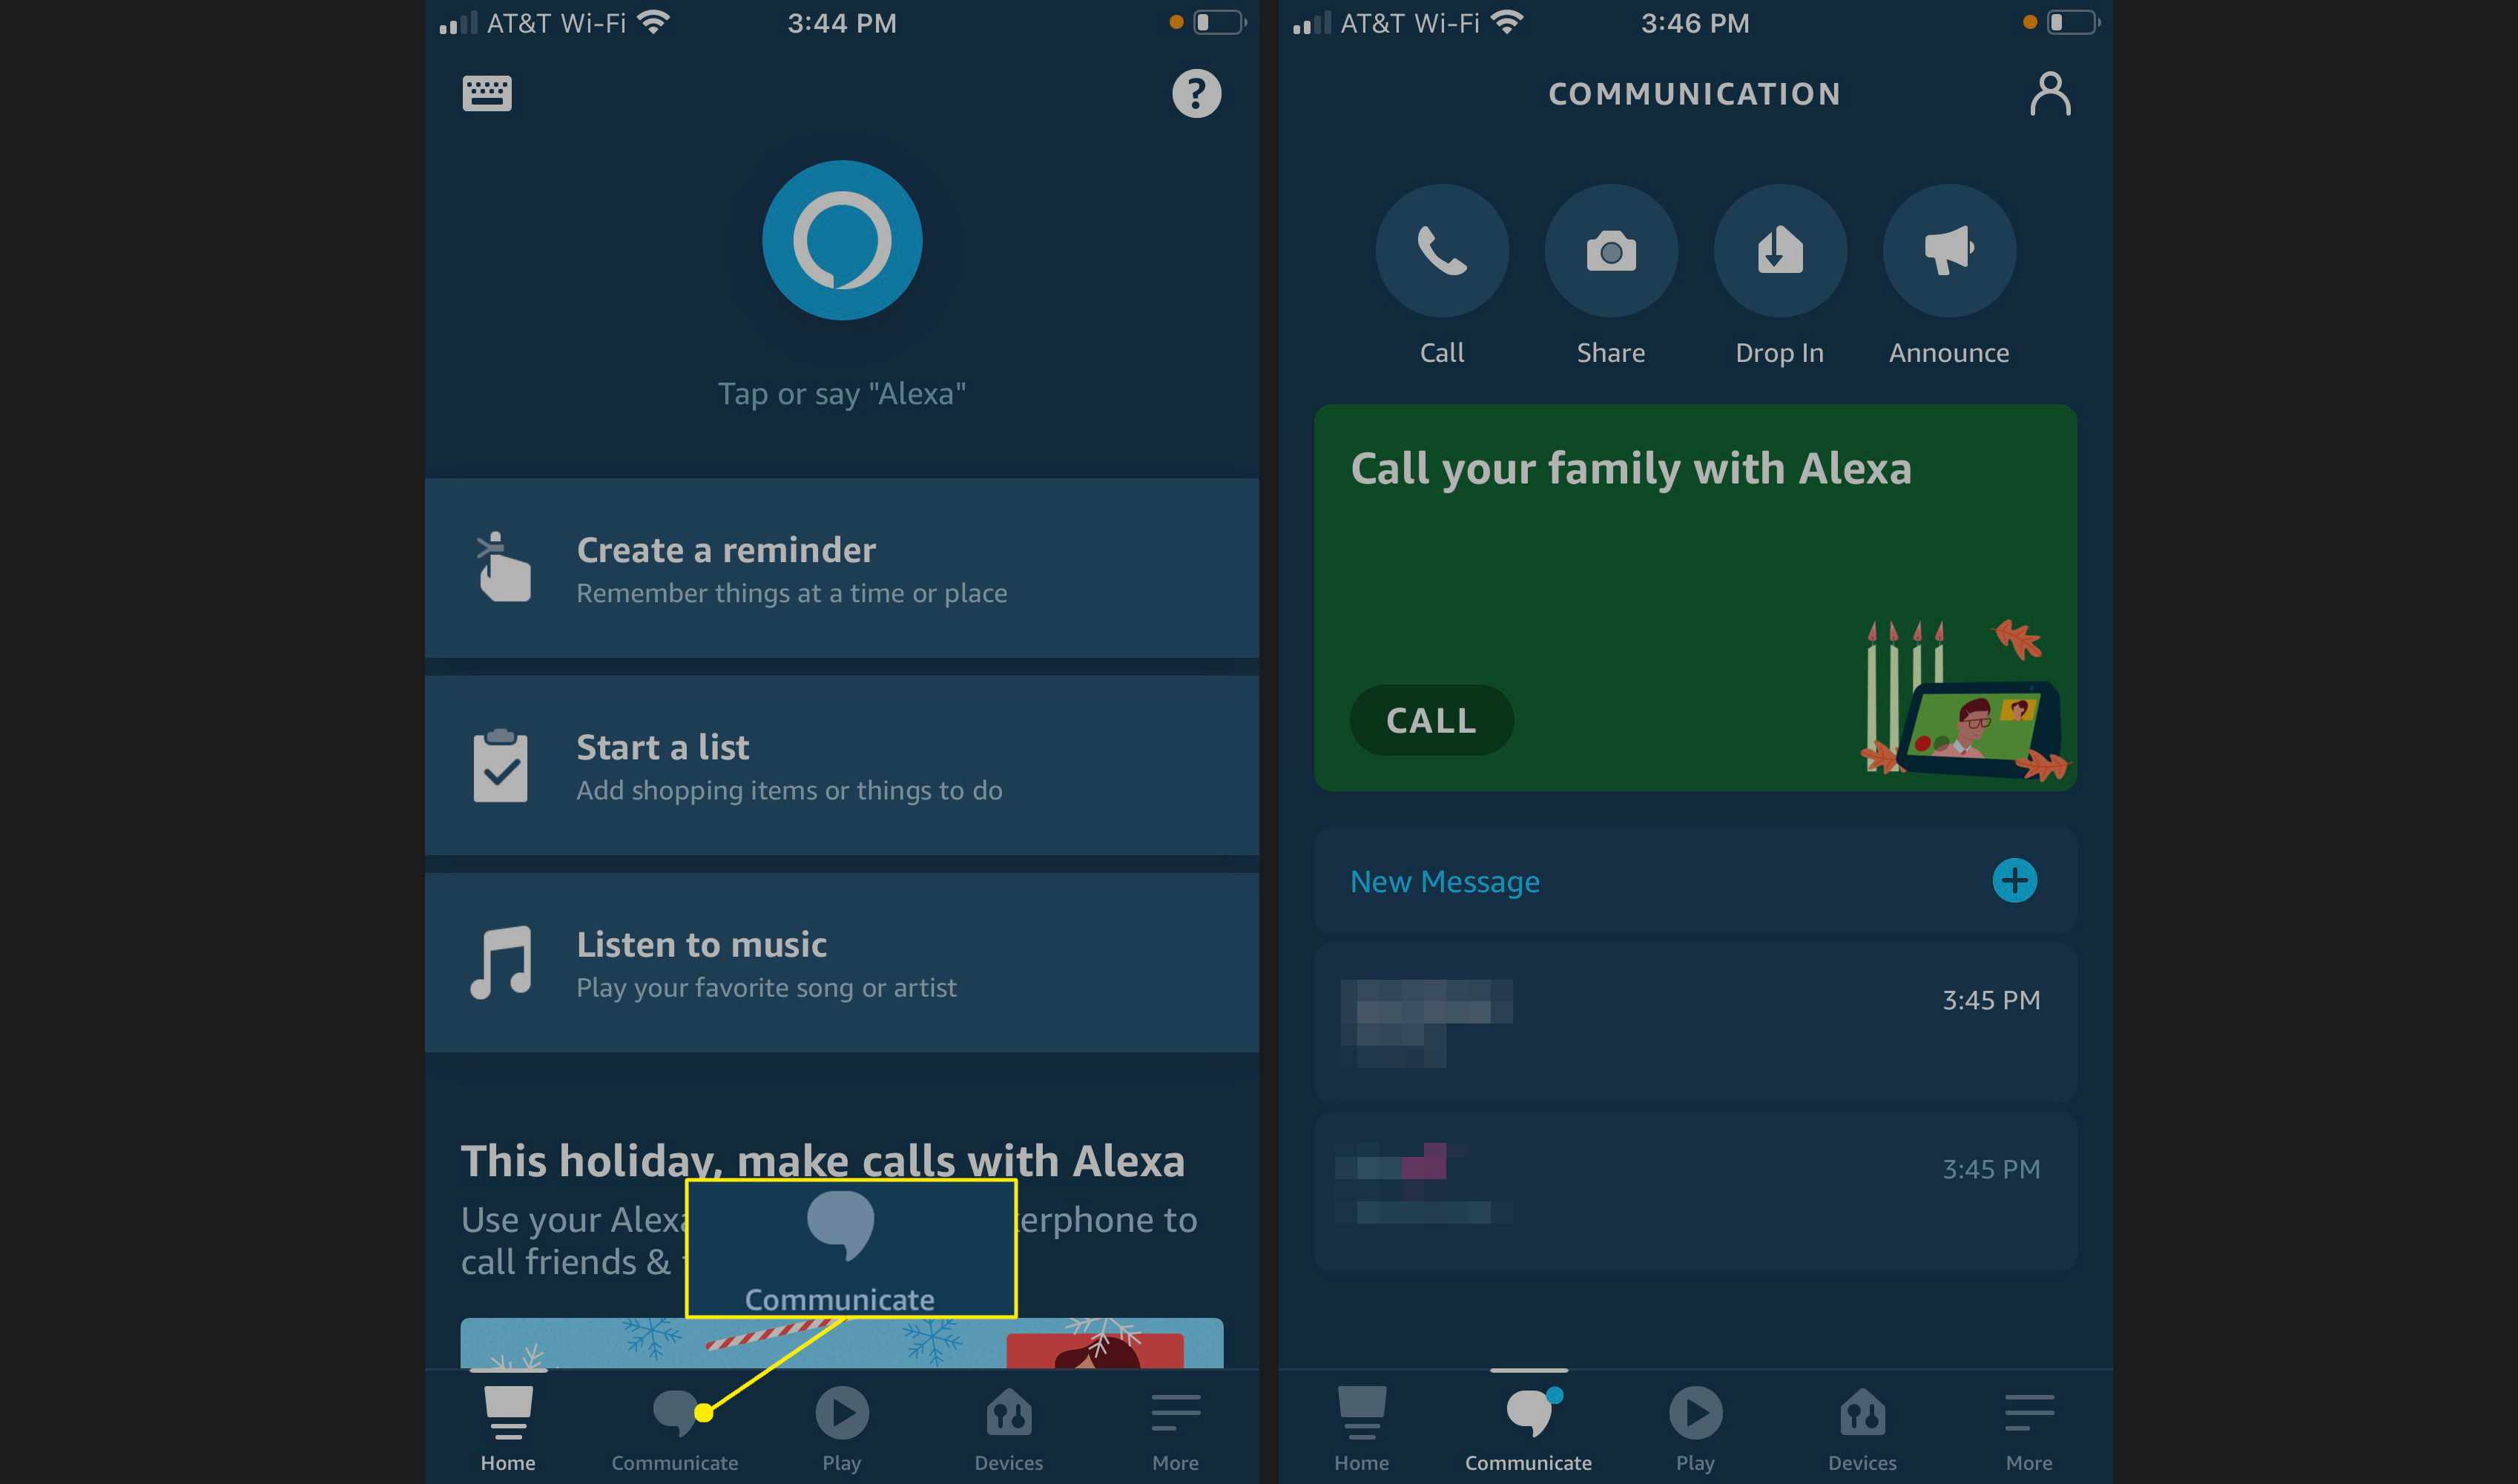 Toque na guia Comunicar para fazer chamadas para alguém em sua lista de contatos, enviar fotos para dispositivos Alexa, usar o recurso Drop-In ou fazer um anúncio através de dispositivos Echo compatíveis.